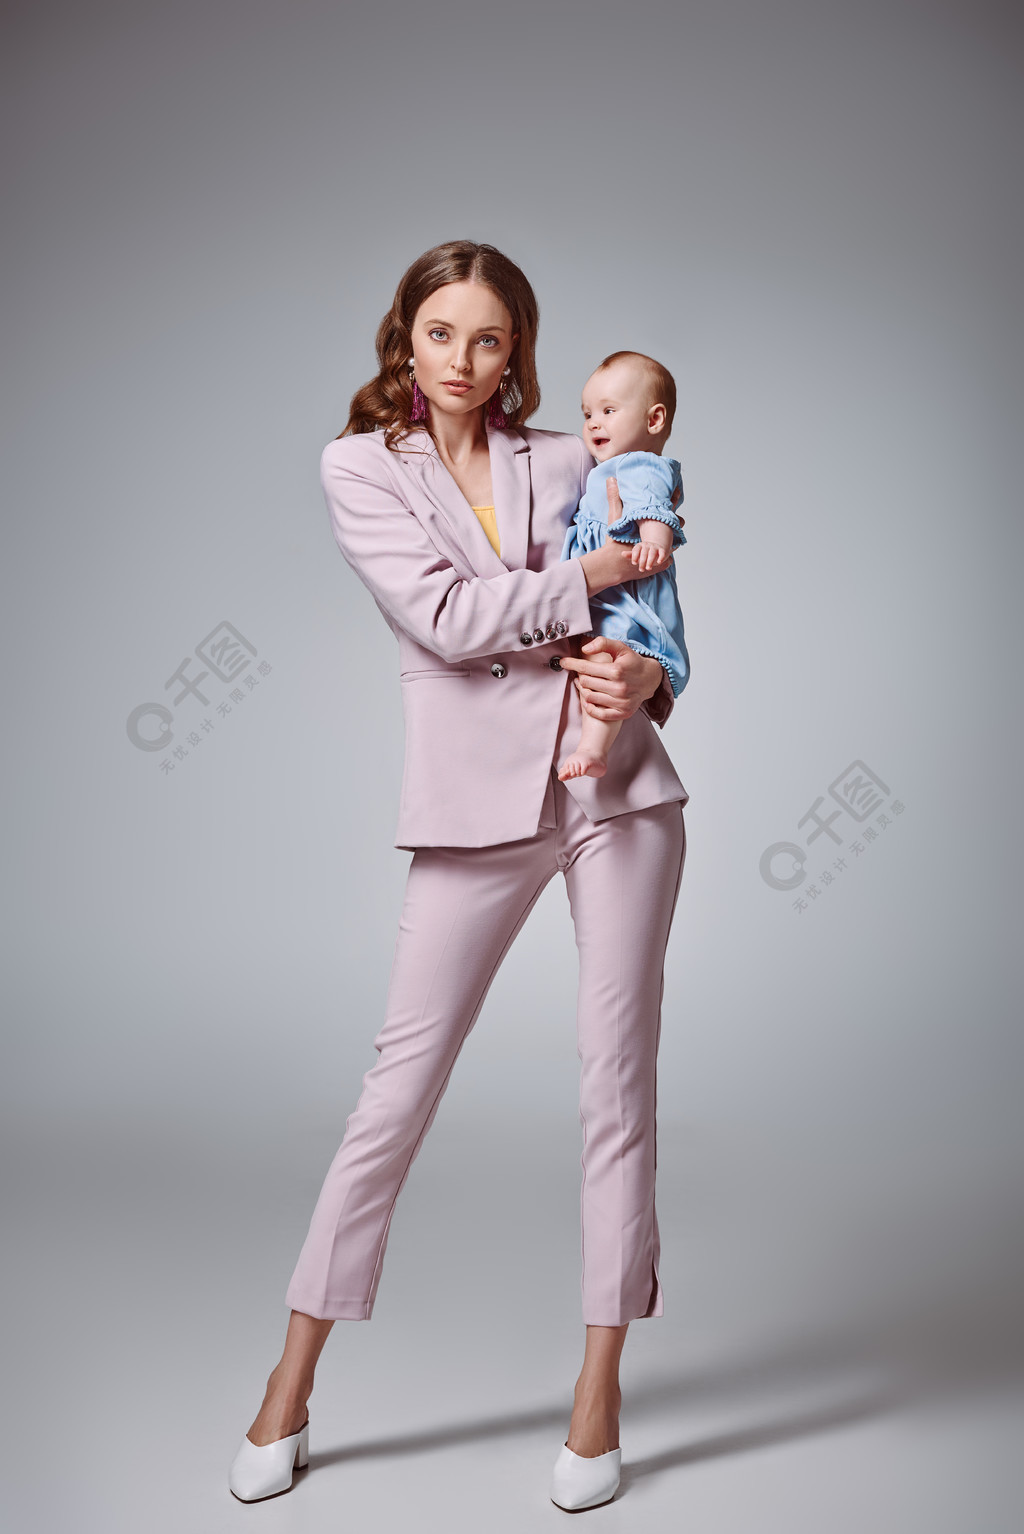 美女抱着小婴儿图片